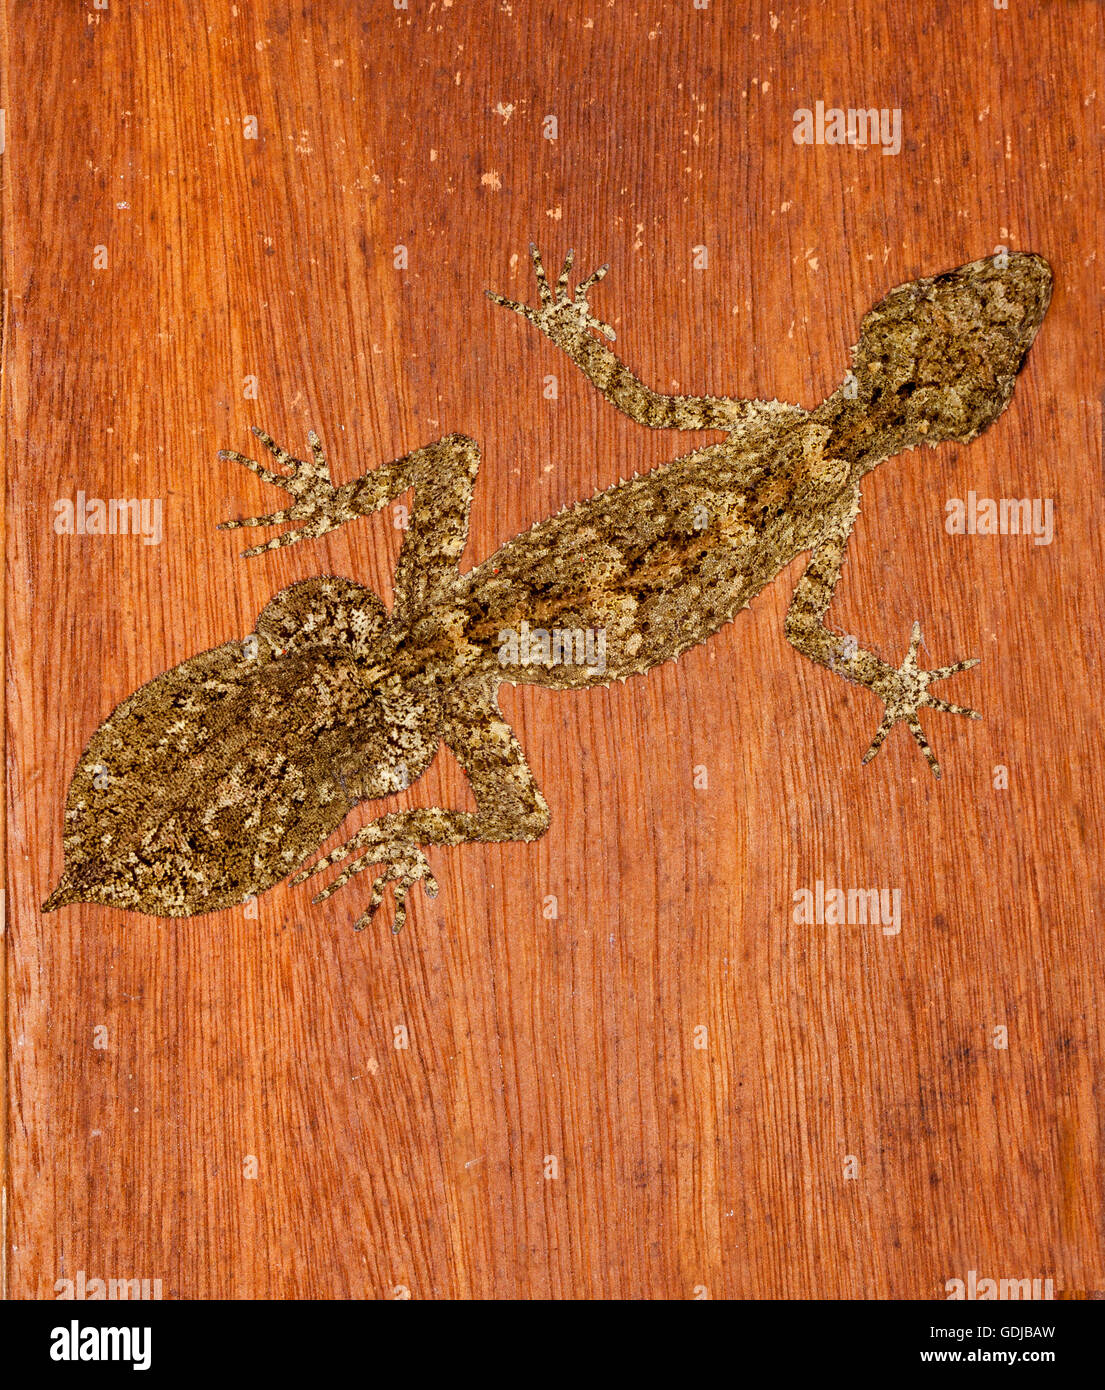 Seltsame & ungewöhnliche Kates Blatt-tailed Gecko Saltuarius Kateae auf Holzwand des ländlichen Gebäudes in seinem natürlichen Regenwald Lebensraum NSW Australia Stockfoto